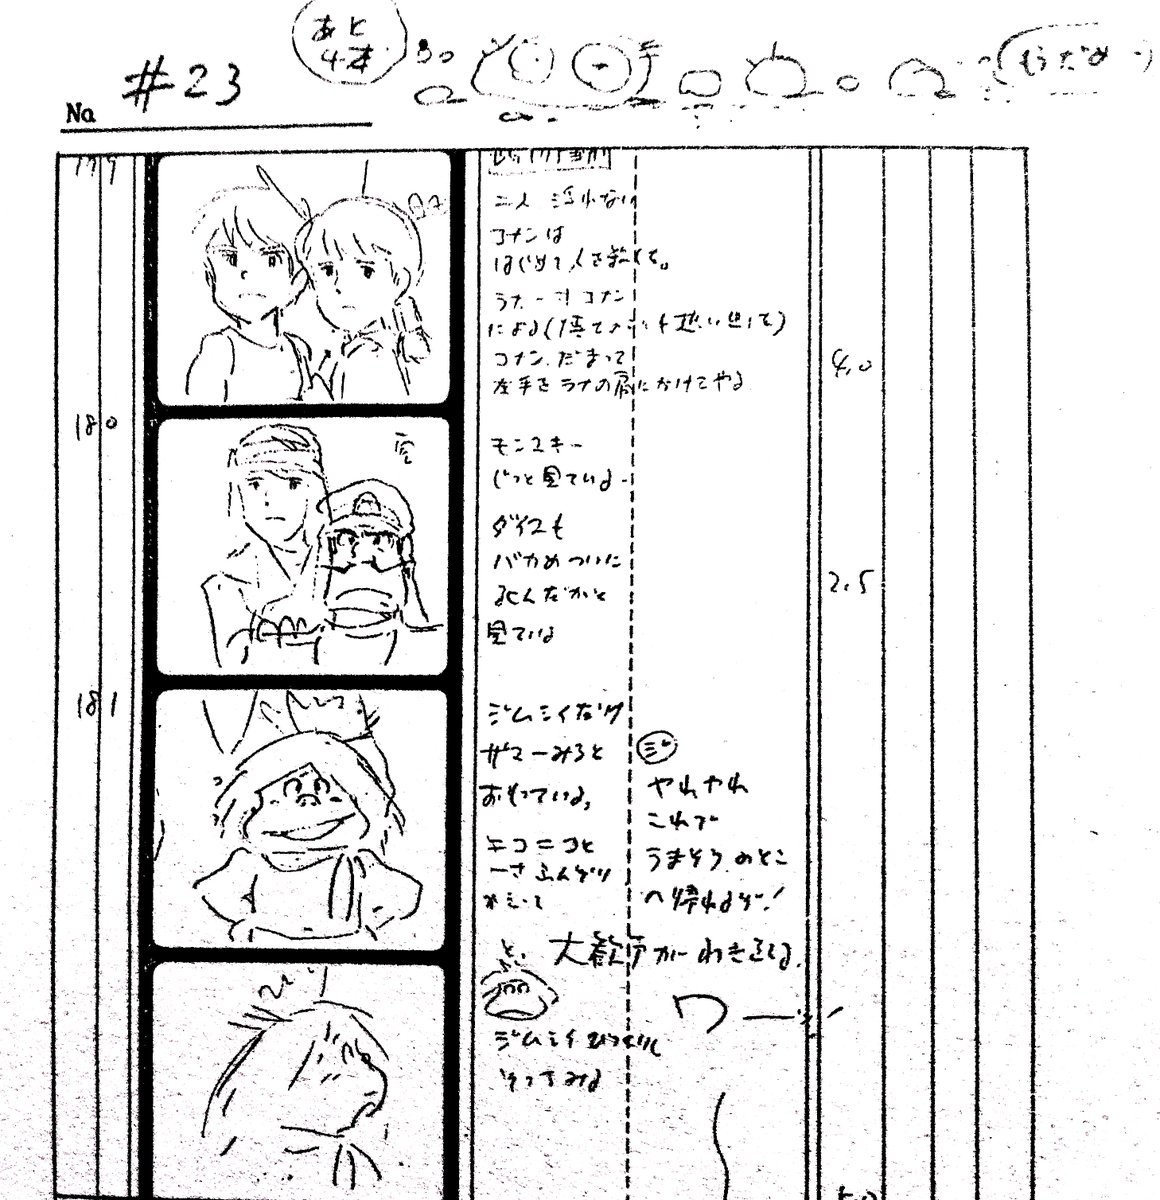 #宮崎駿 監督の絵コンテ
「この辺よりコナン 次第に成長がカオに出はじめます」
レプカを見送り、「はじめて人を殺した」という自覚を経て成長するコナン。
#未来少年コナン 